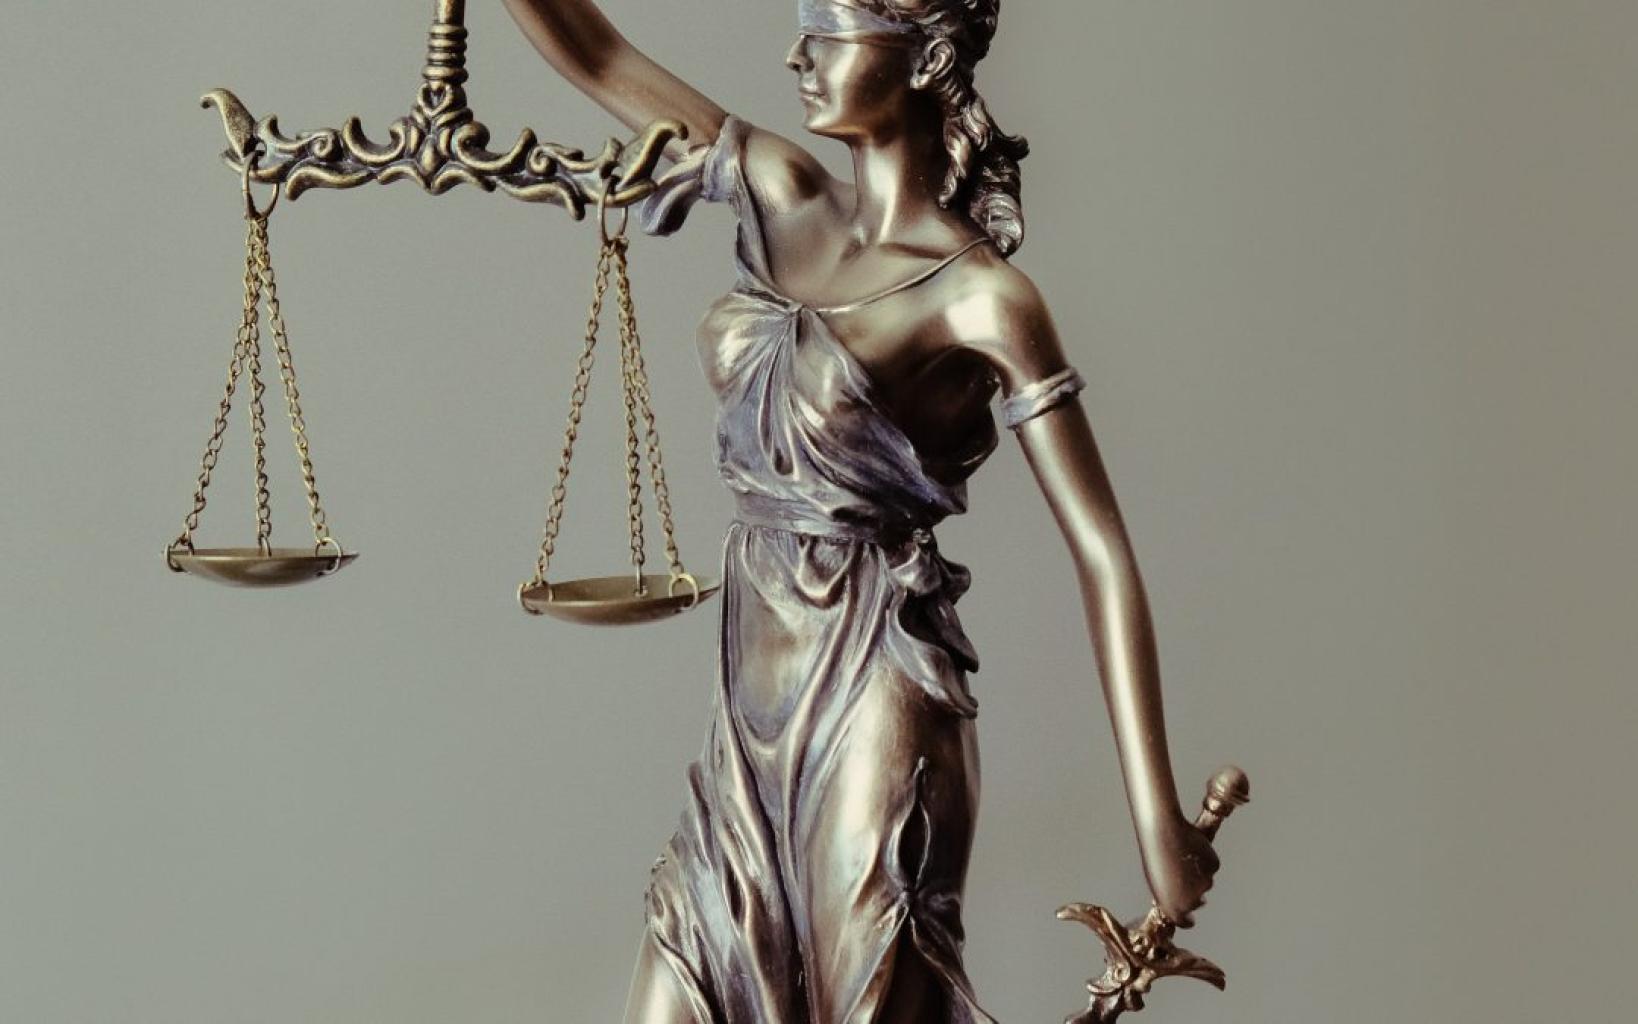 كيفية اختيار أفضل محامي لقضيك وتحقيق النصر في المحكمة - سمعة المحامي وتقييم العمل السابق